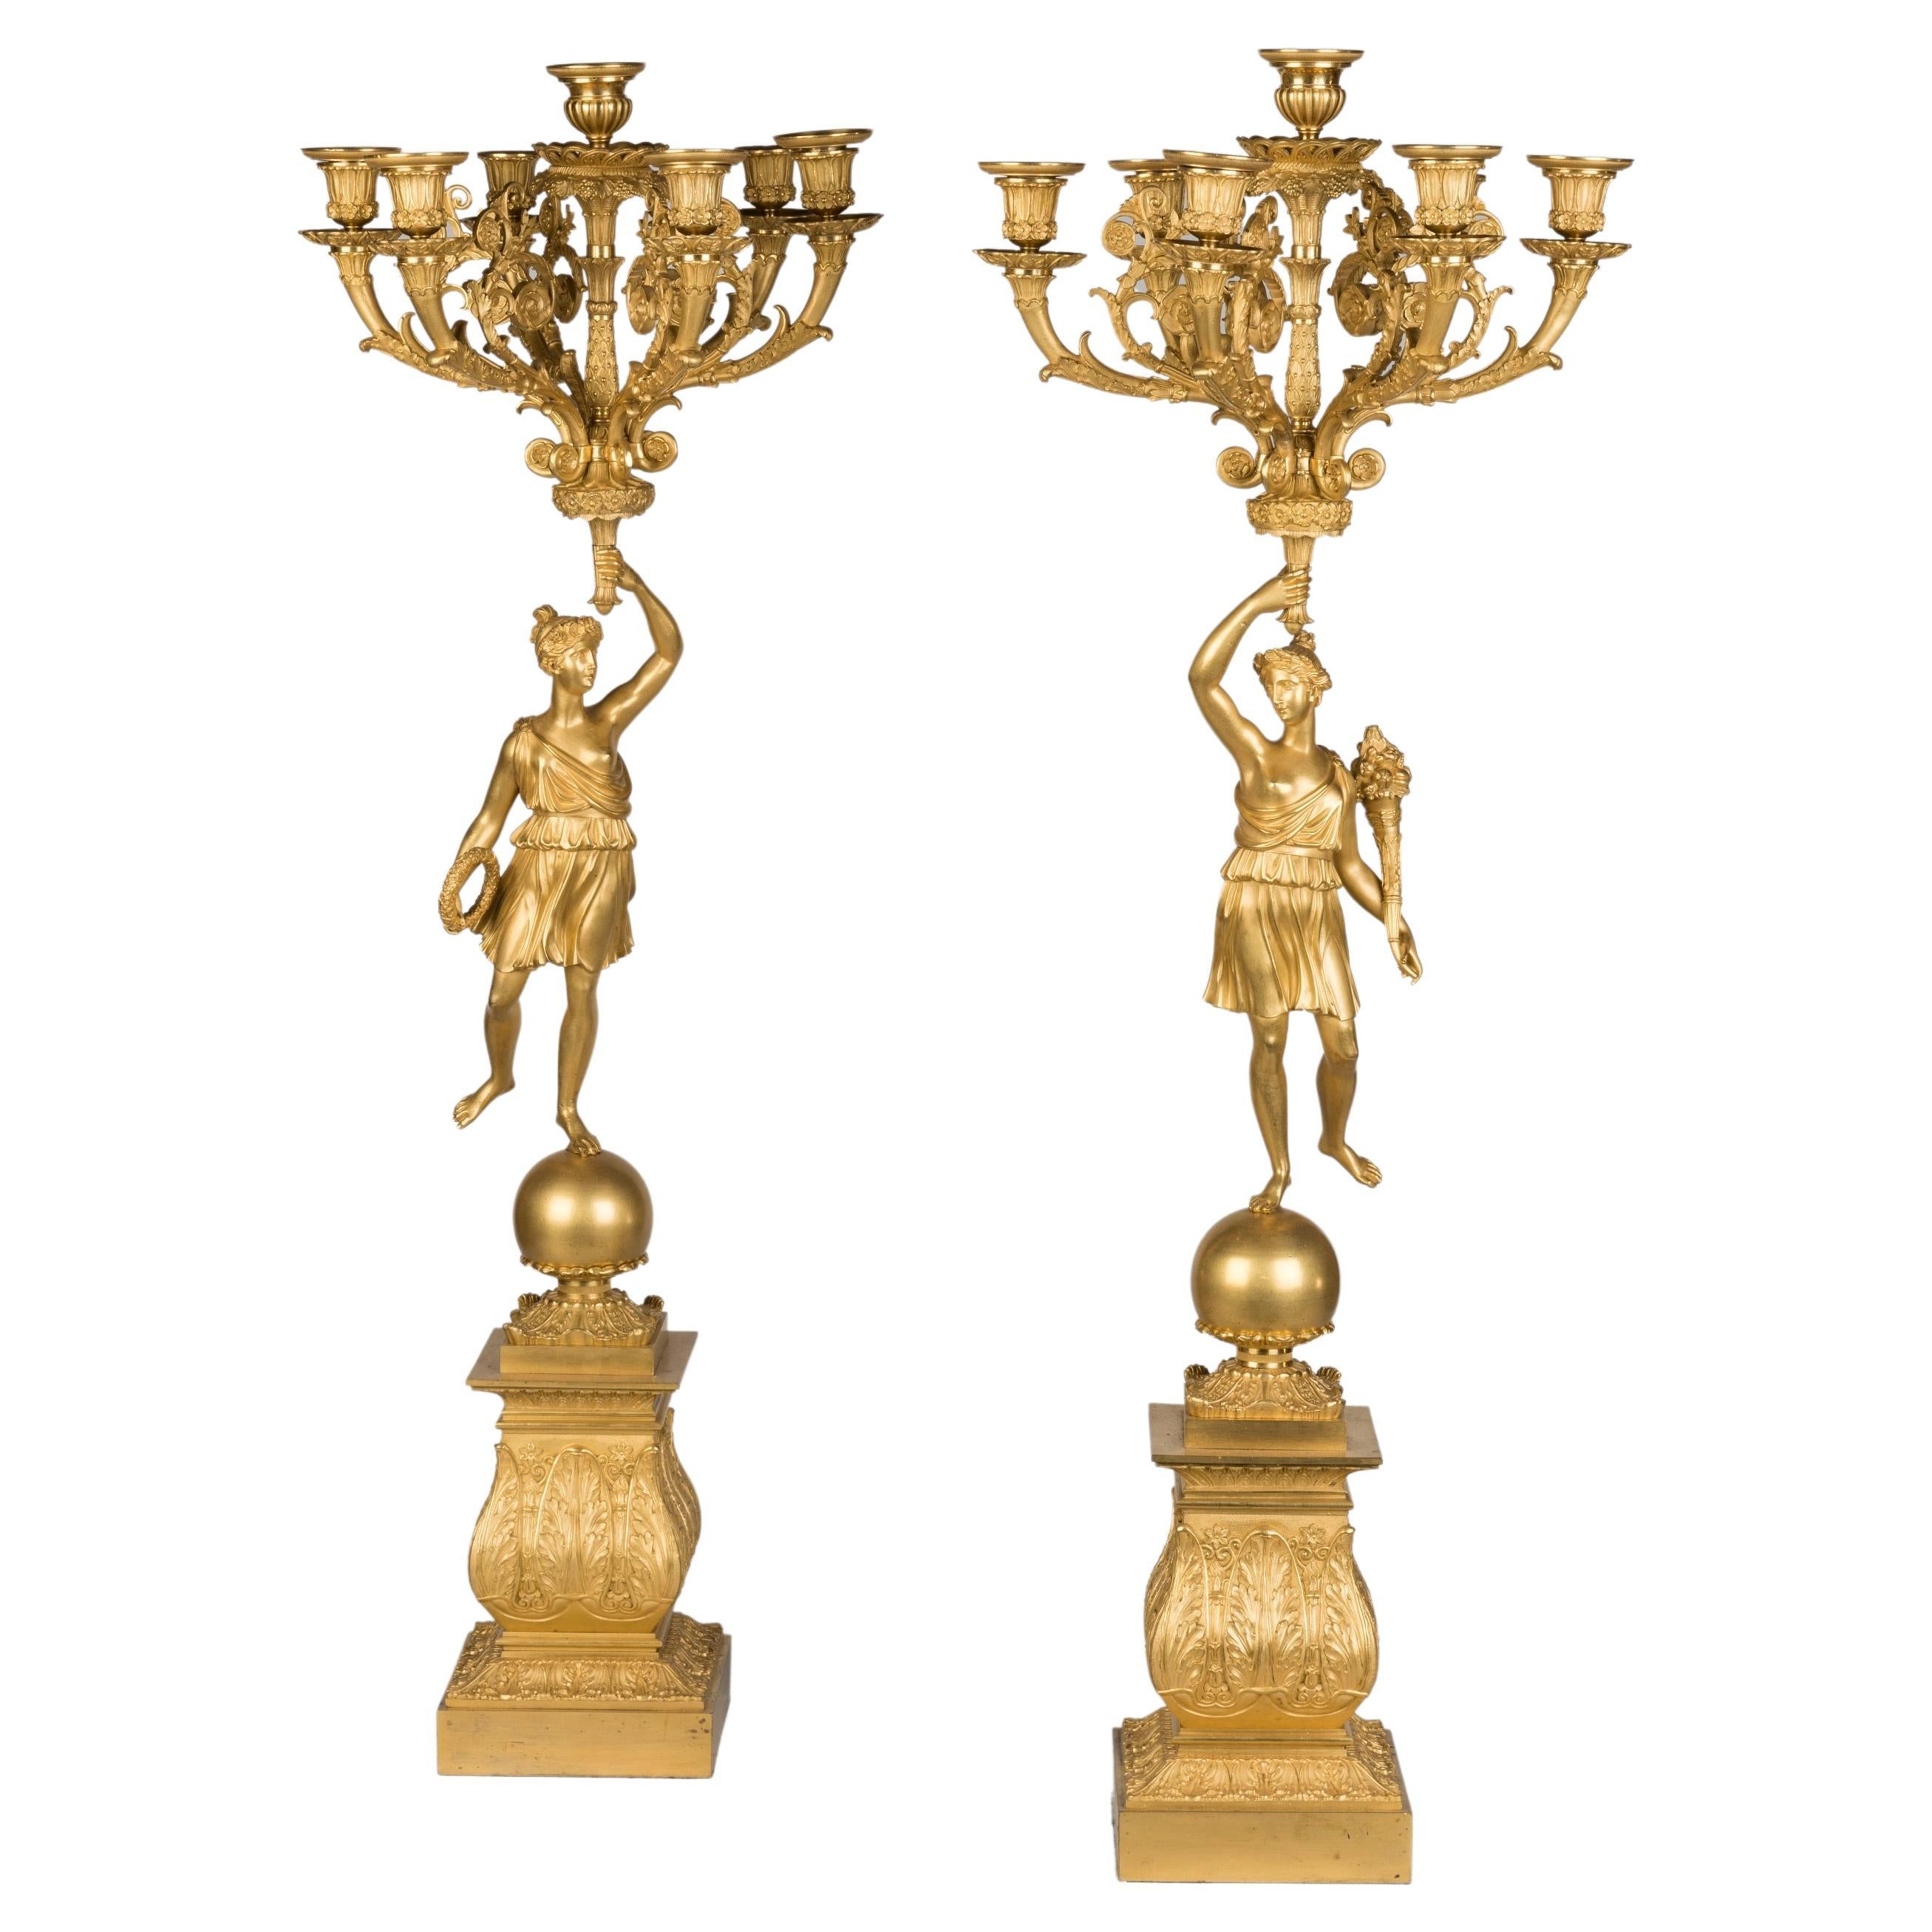 Paar französische, feuervergoldete Goldbronze-Kandelaber aus dem frühen 19. Jahrhundert